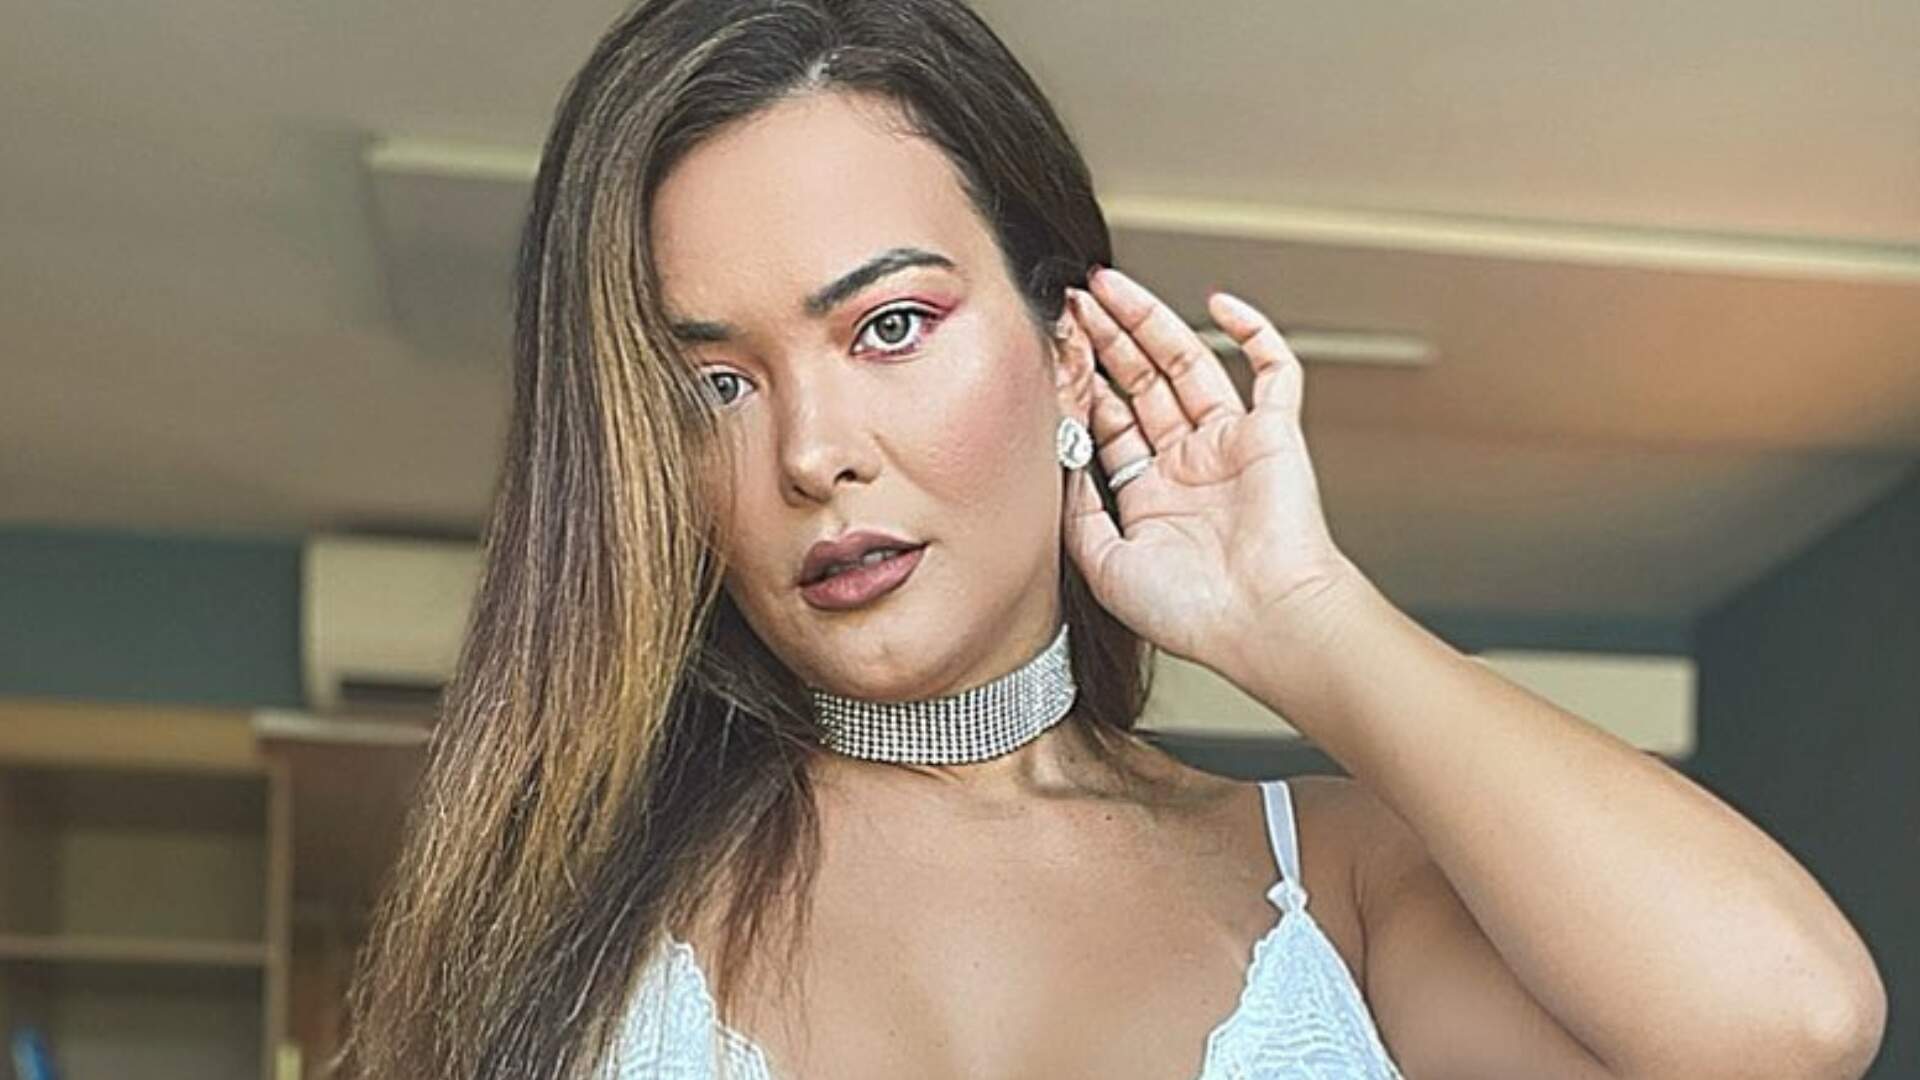 Geisy Arruda faz provocação no quarto de calcinha transparente e quase é barrada do Instagram - Metropolitana FM